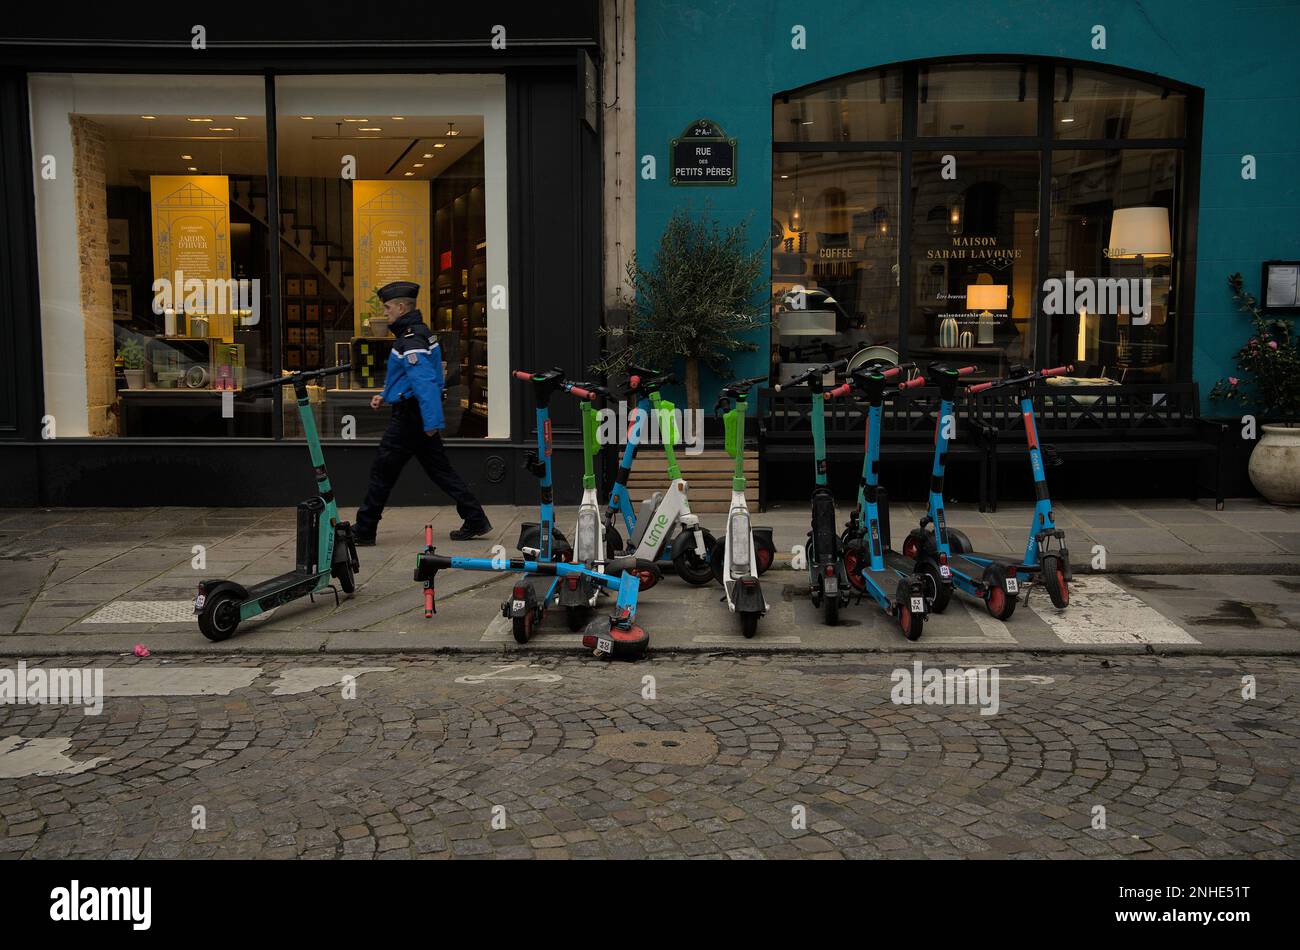 Farbenfrohe elektrische Roller, die unordentlich auf dem Place des Petits Pères, Paris, Frankreich, geparkt waren Stockfoto